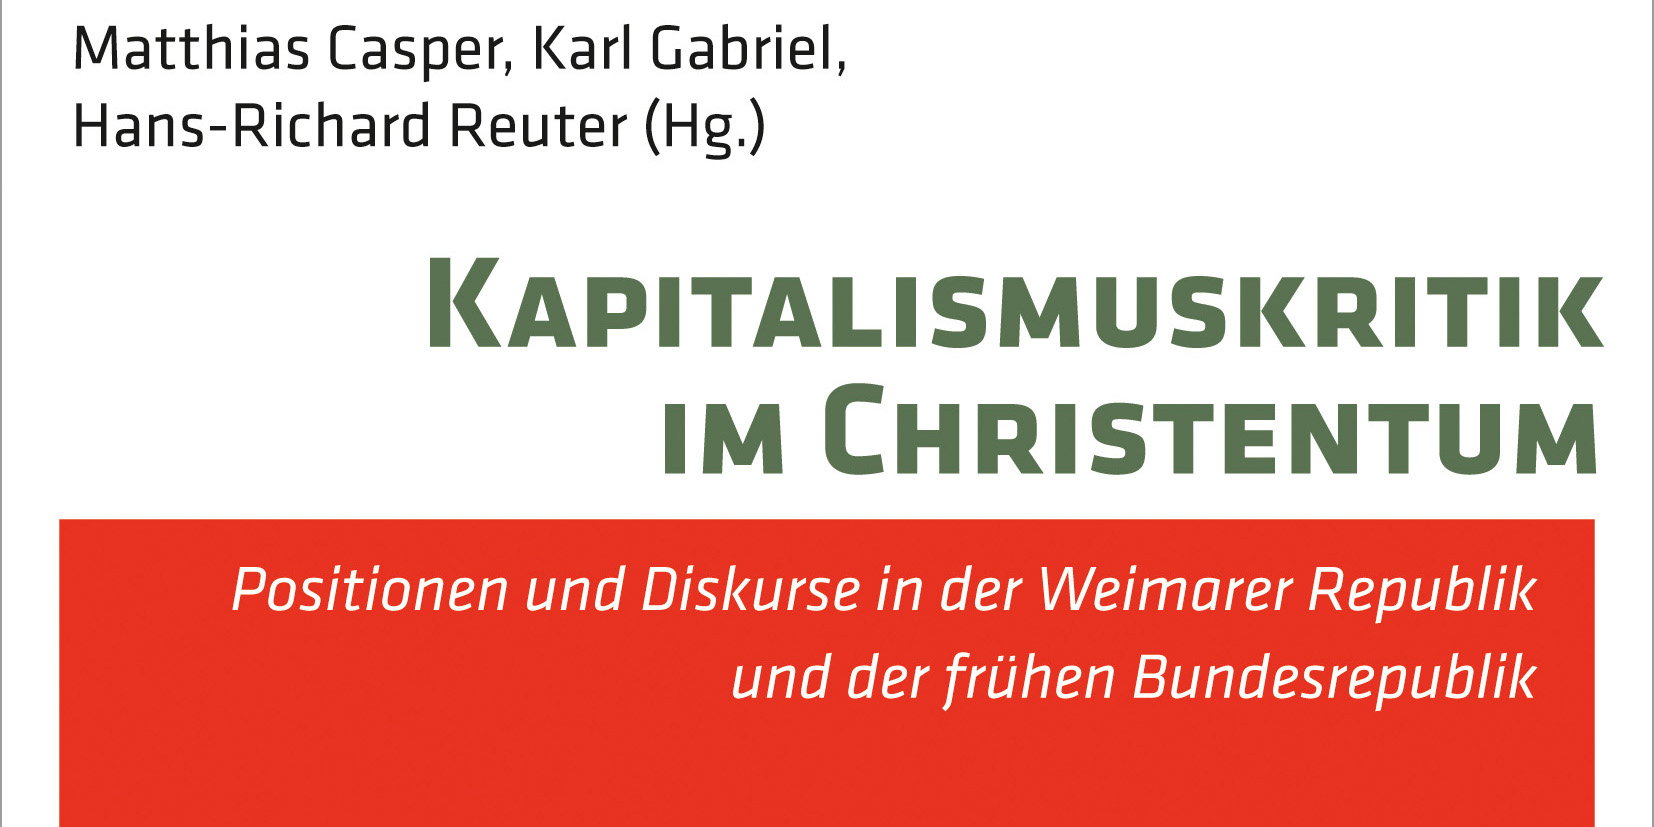 News Buch Reihe Crm Kapitalismuskritik Im Christentum Kasper Gabriel Reuter 2 1